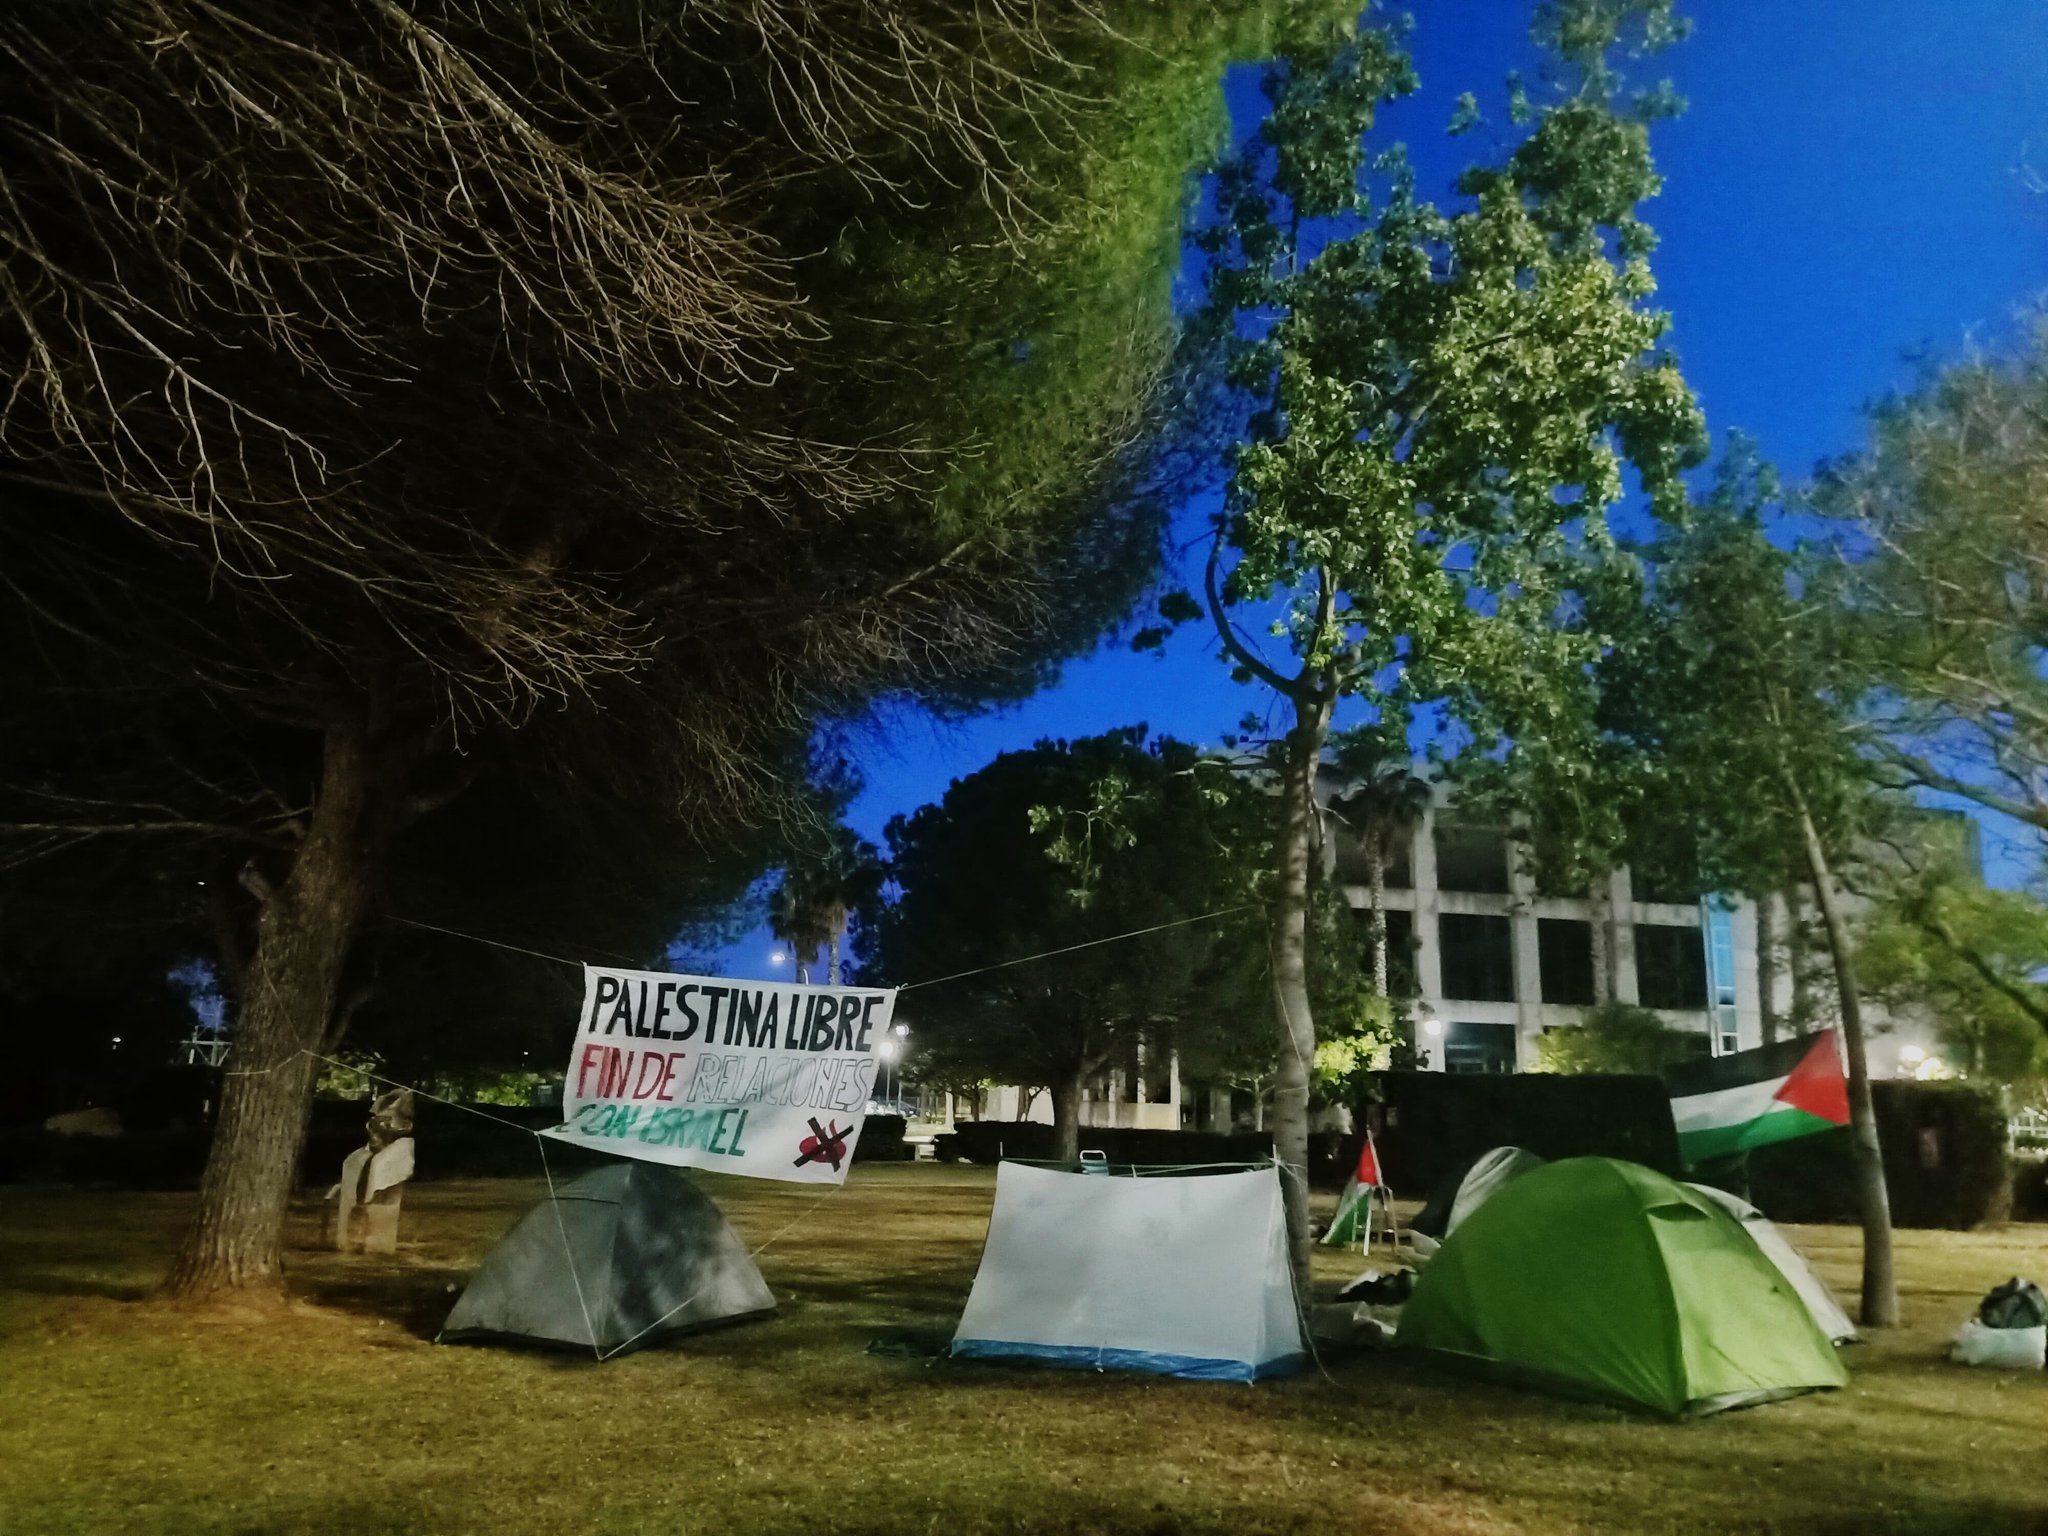 Imagen de la acampada en el Campus de Puerto Real publicada en redes sociales.